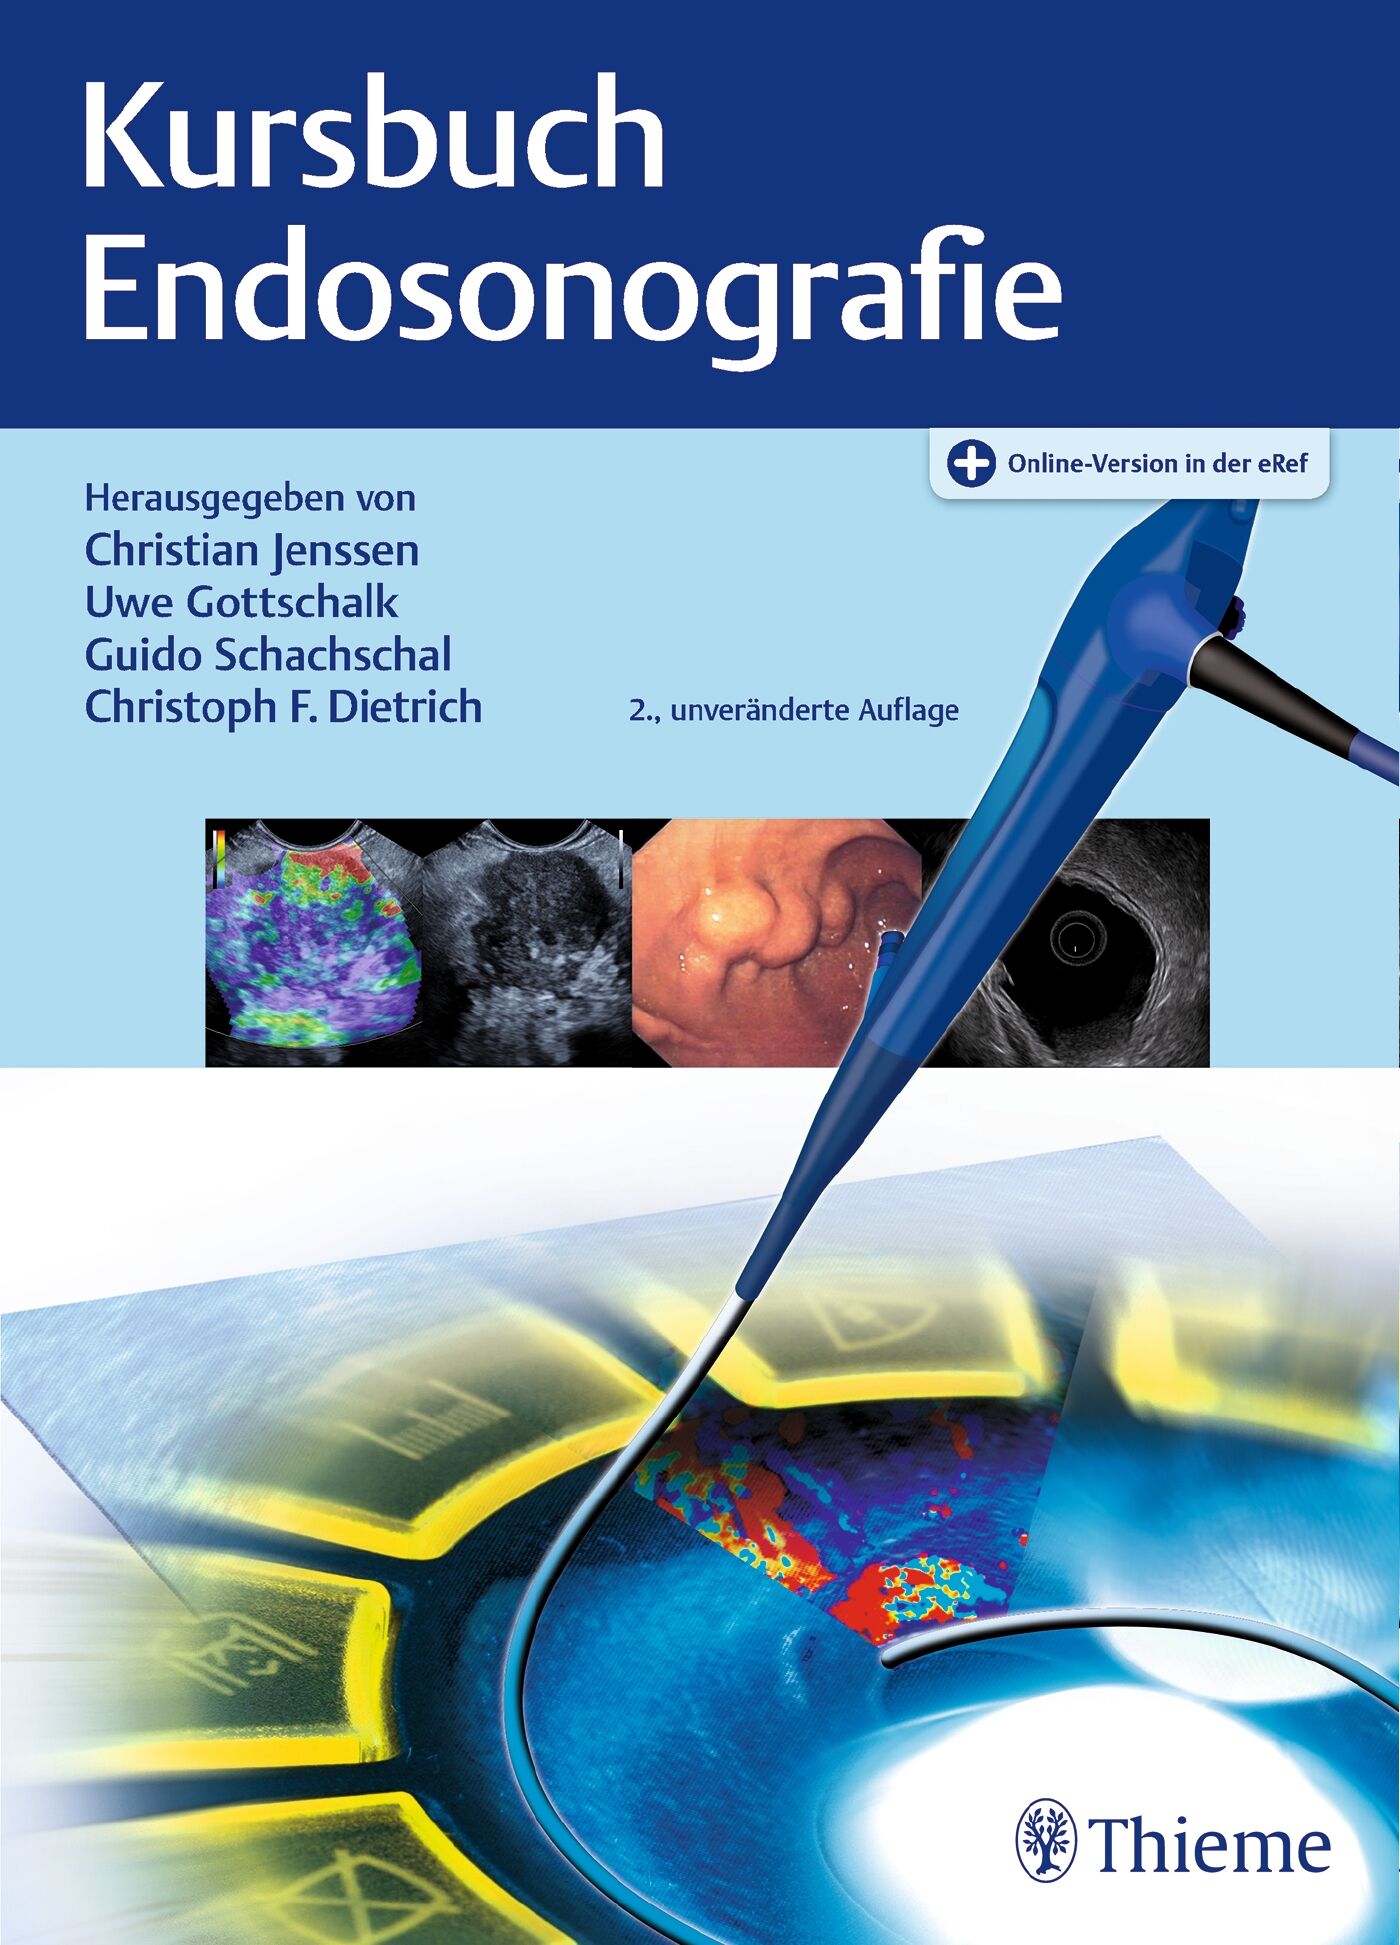 Kursbuch Endosonografie, 9783132425835